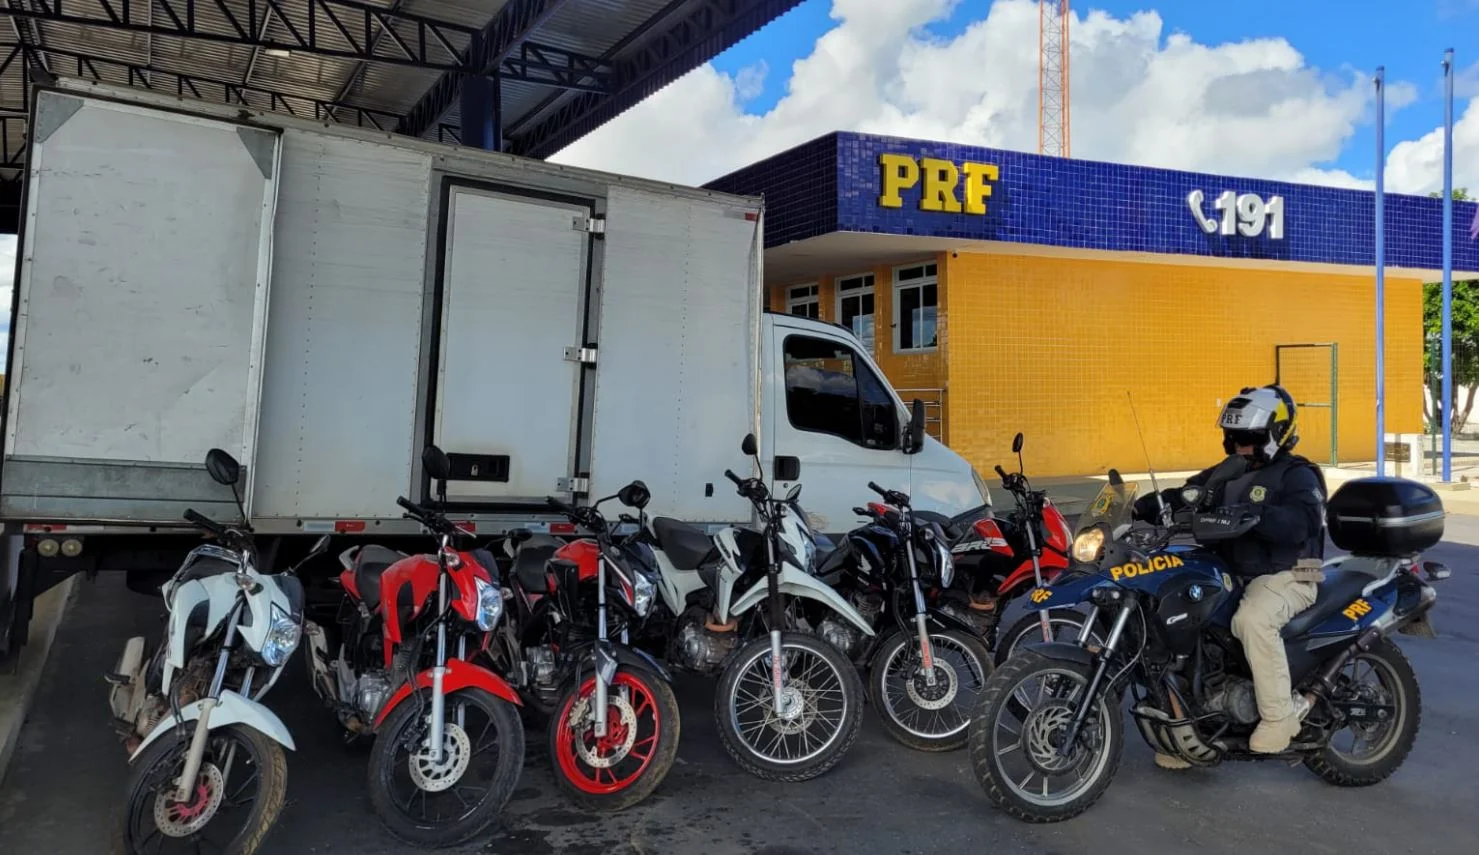 Foto mostra seis motos em frente ao caminhão baú e um policial em cima de uma motocicleta da PRF